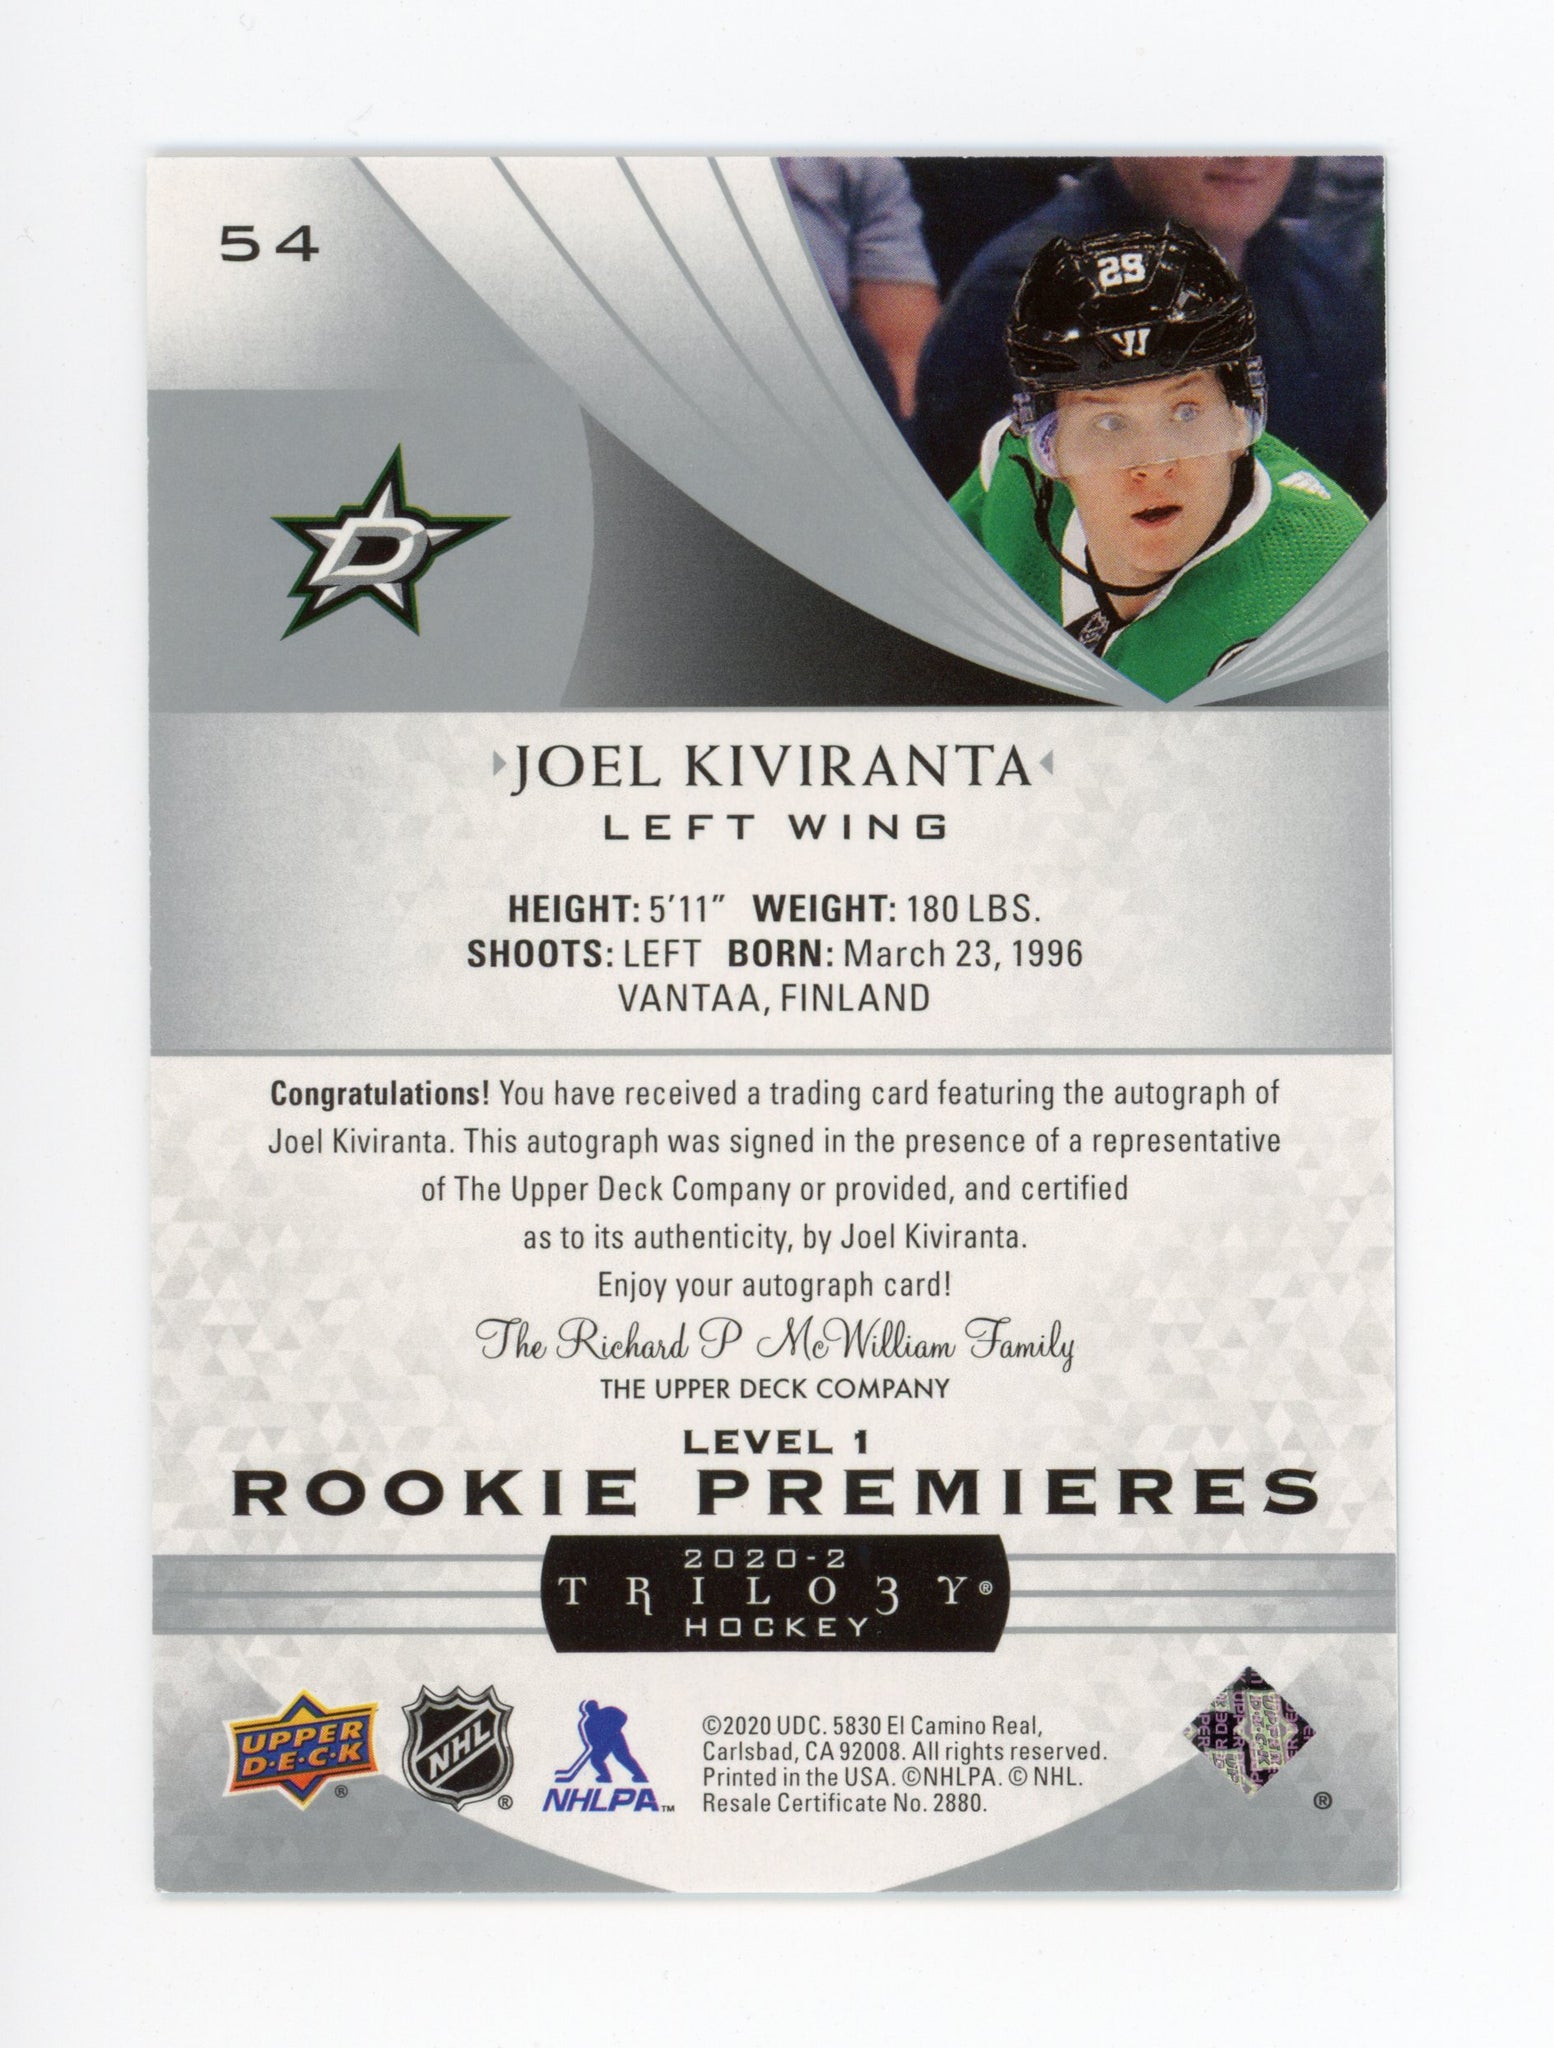 2020-2021 Joel Kiviranta Rookie Premiers #d /399 Trilogy Dallas Stars # 54